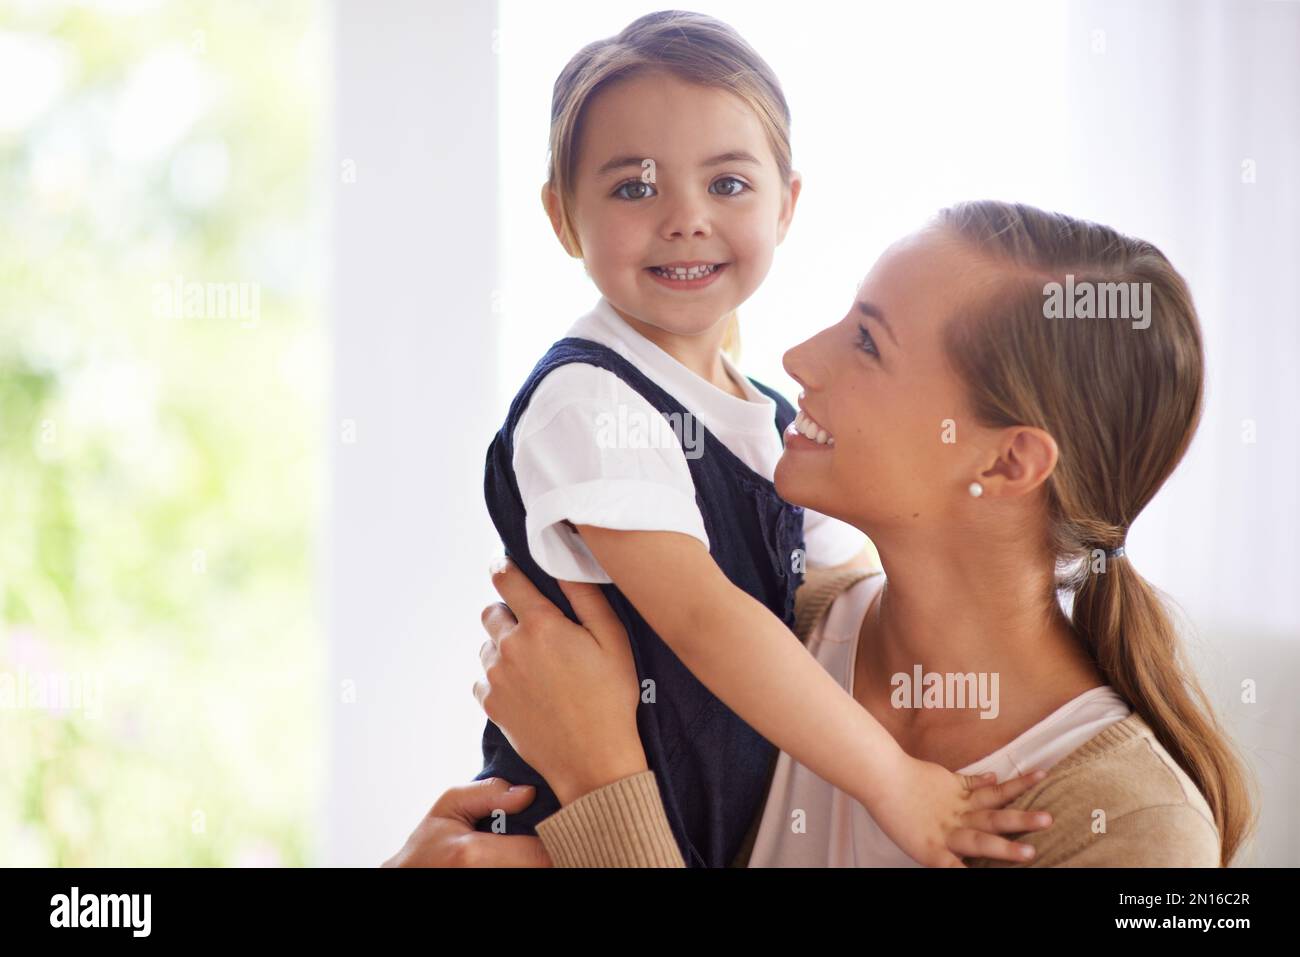 Jeden Moment genießen. Porträt einer jungen Mutter und ihres kleinen Mädchens, die sich zu Hause anfreunden. Stockfoto